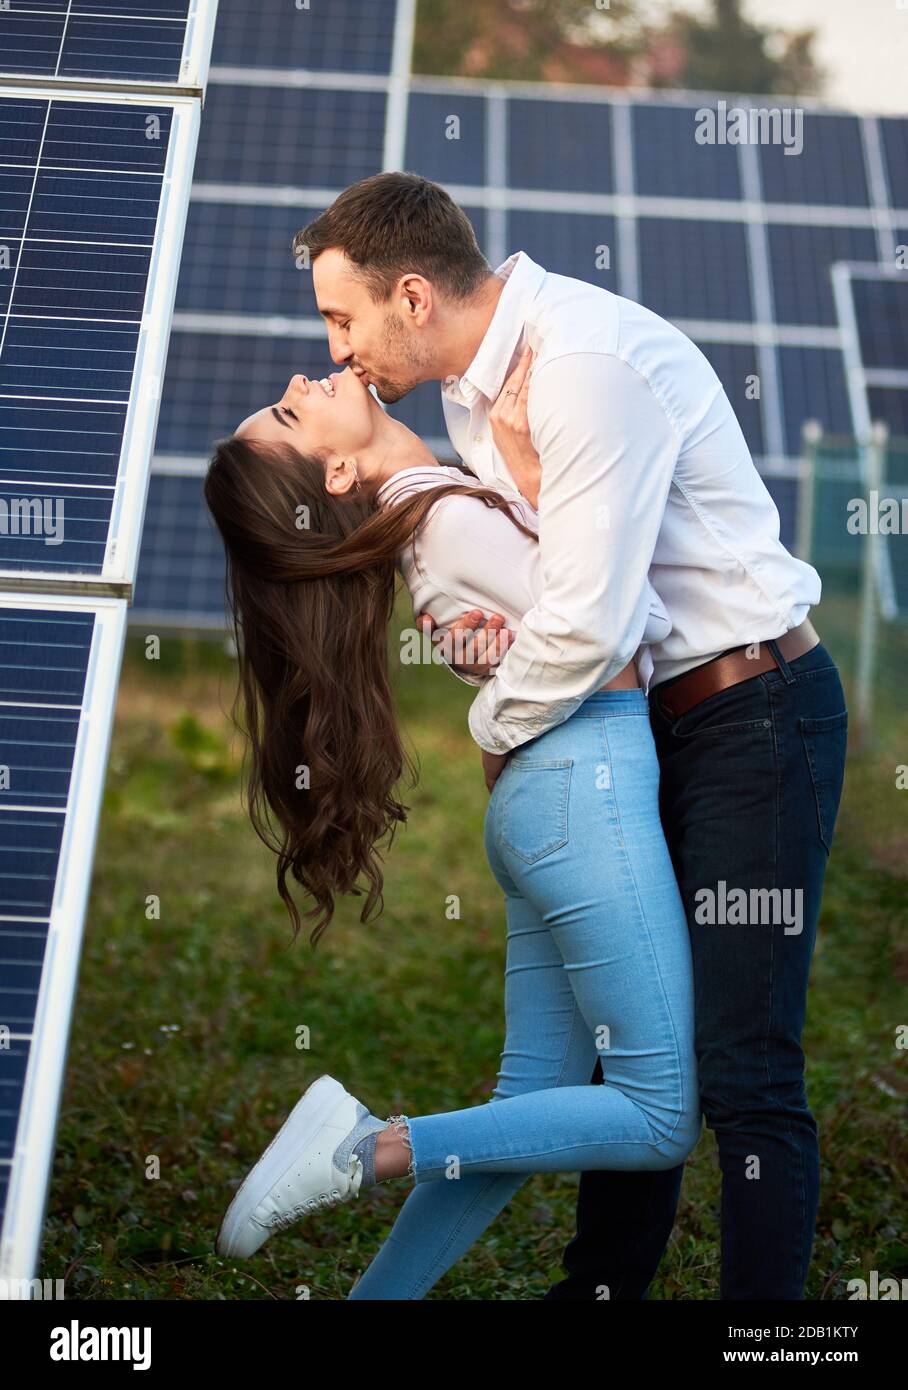 Un uomo bacia il suo amante sullo sfondo di una serie di pannelli solari. Una donna dai capelli lunghi sta godendo le braccia di una persona amata. Un mondo moderno con tecnologia in continua evoluzione Foto Stock